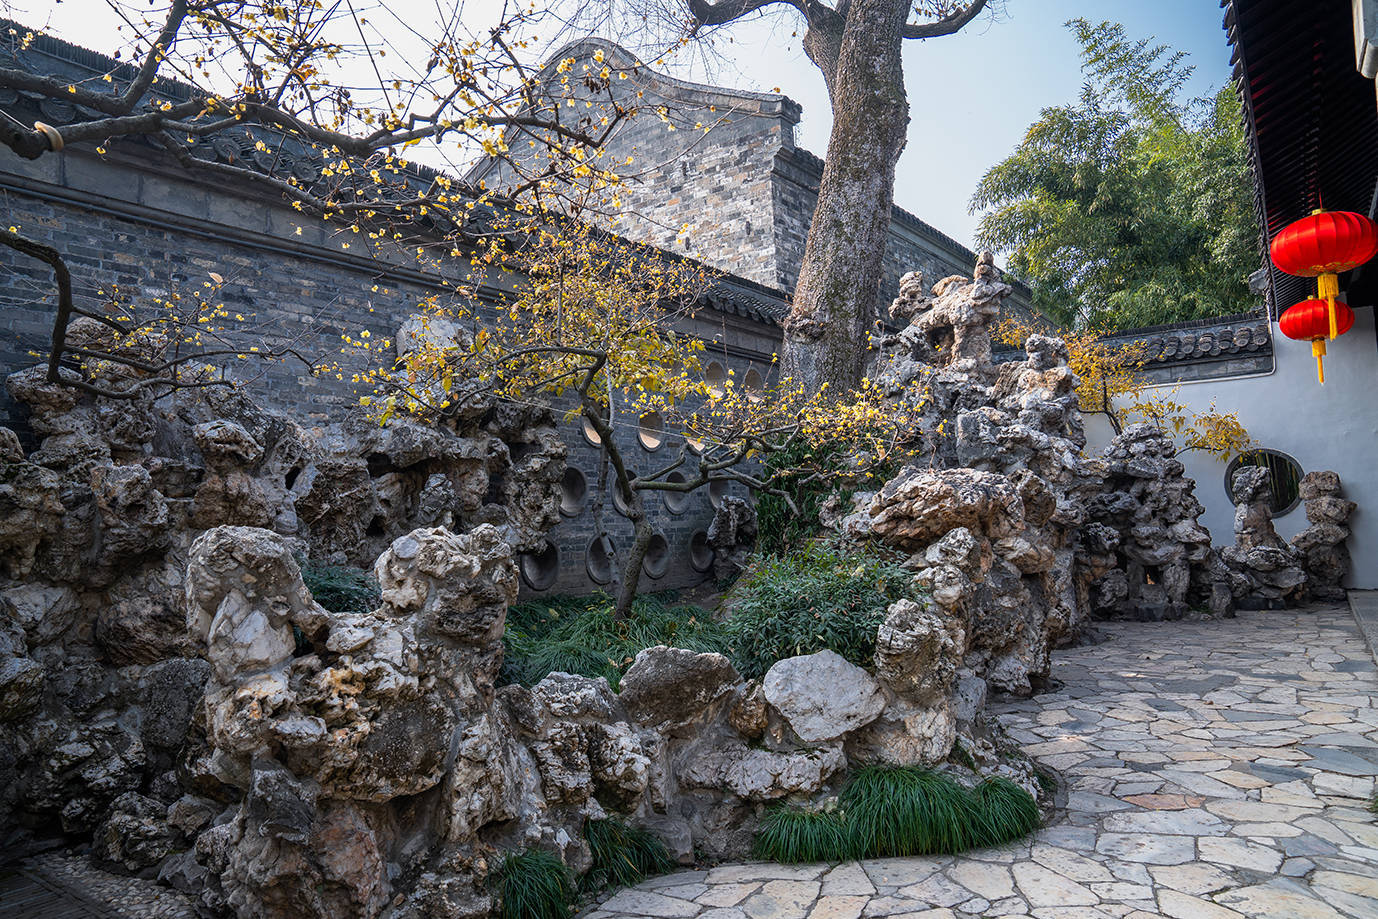 世界首富花巨资在扬州造园子,用石头建四季假山堪称一绝,可惜他没住上